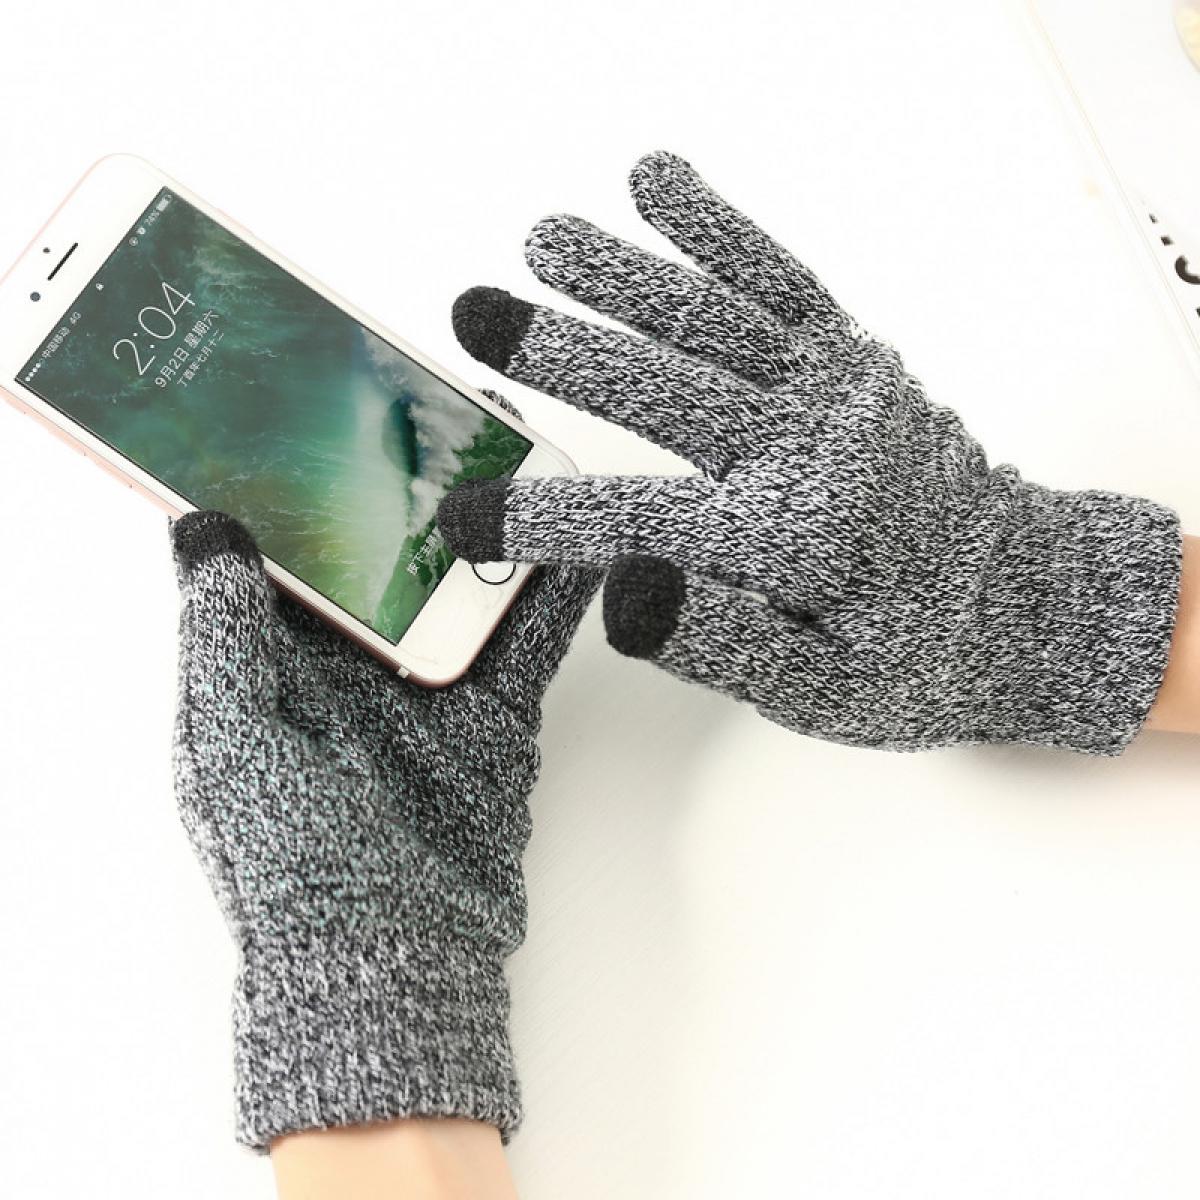 Shot - Gants Homme tactiles pour XIAOMI Mi A2 Smartphone Taille M 3 doigts Hiver (GRIS) - Autres accessoires smartphone